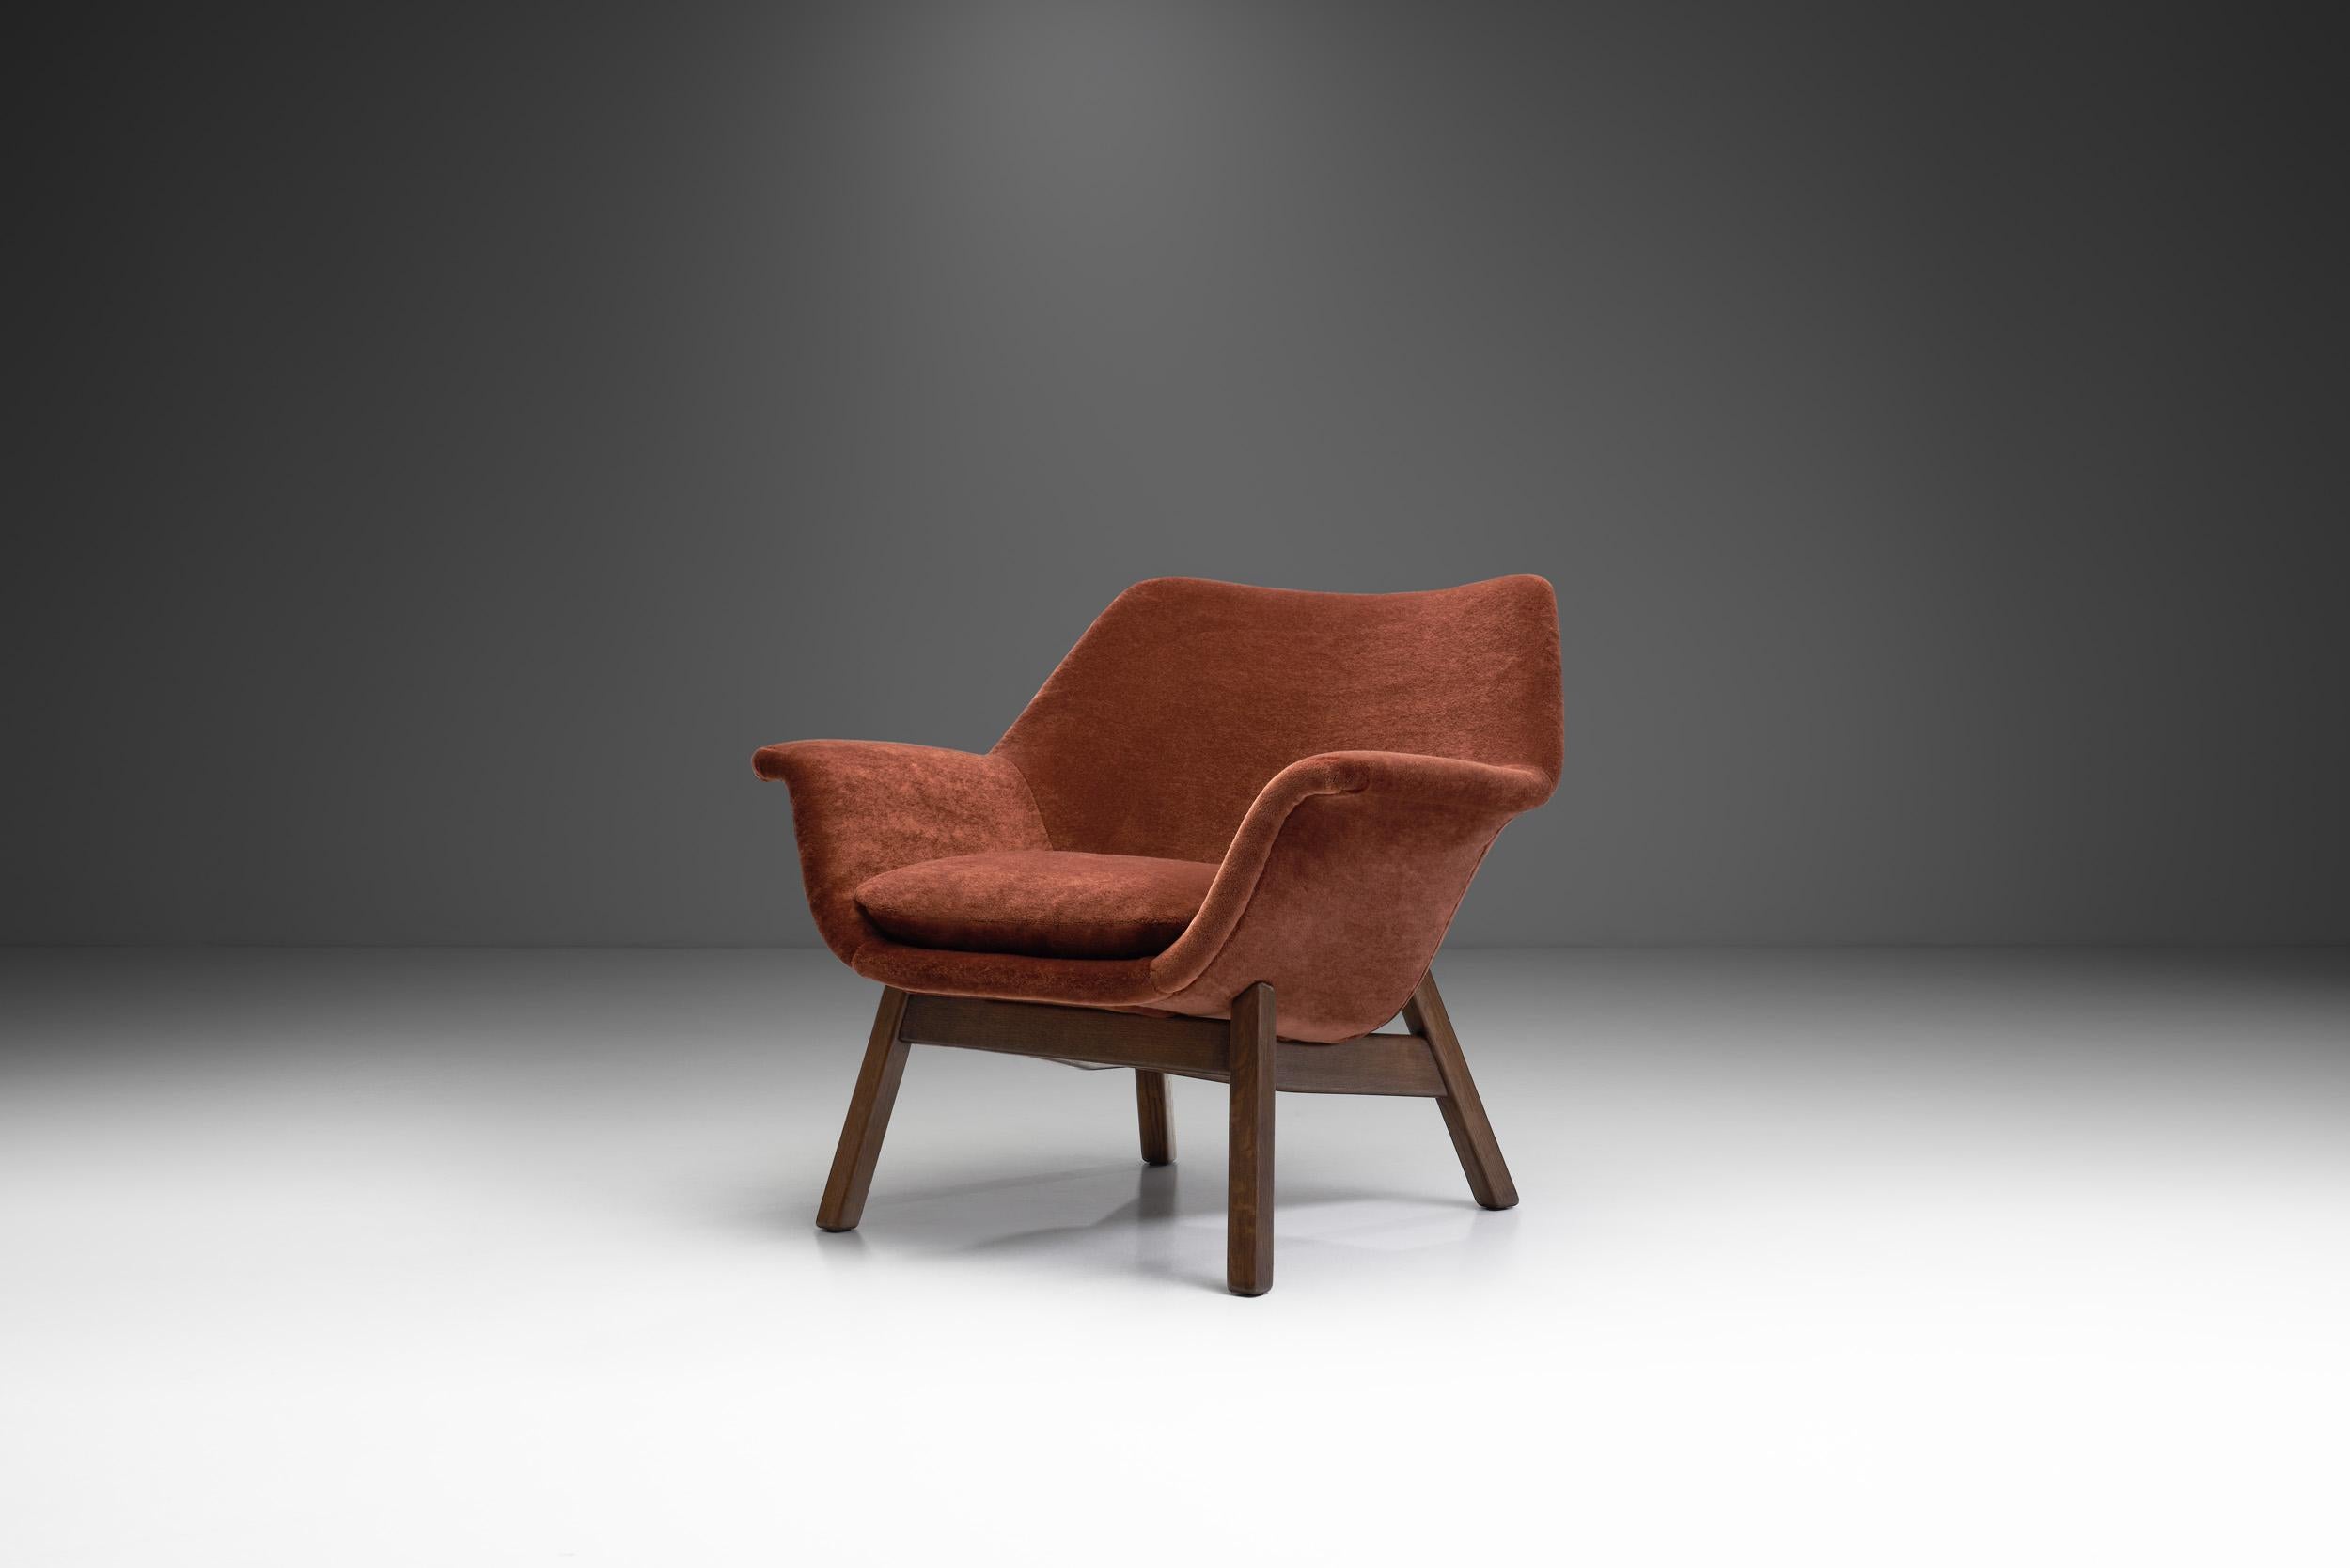 Ce rare fauteuil en chêne présente les courbes conviviales qui définissaient le design des années 1950 dans les pays nordiques. Hiort af Ornäs a développé le modèle pour sa propre entreprise de meubles, 